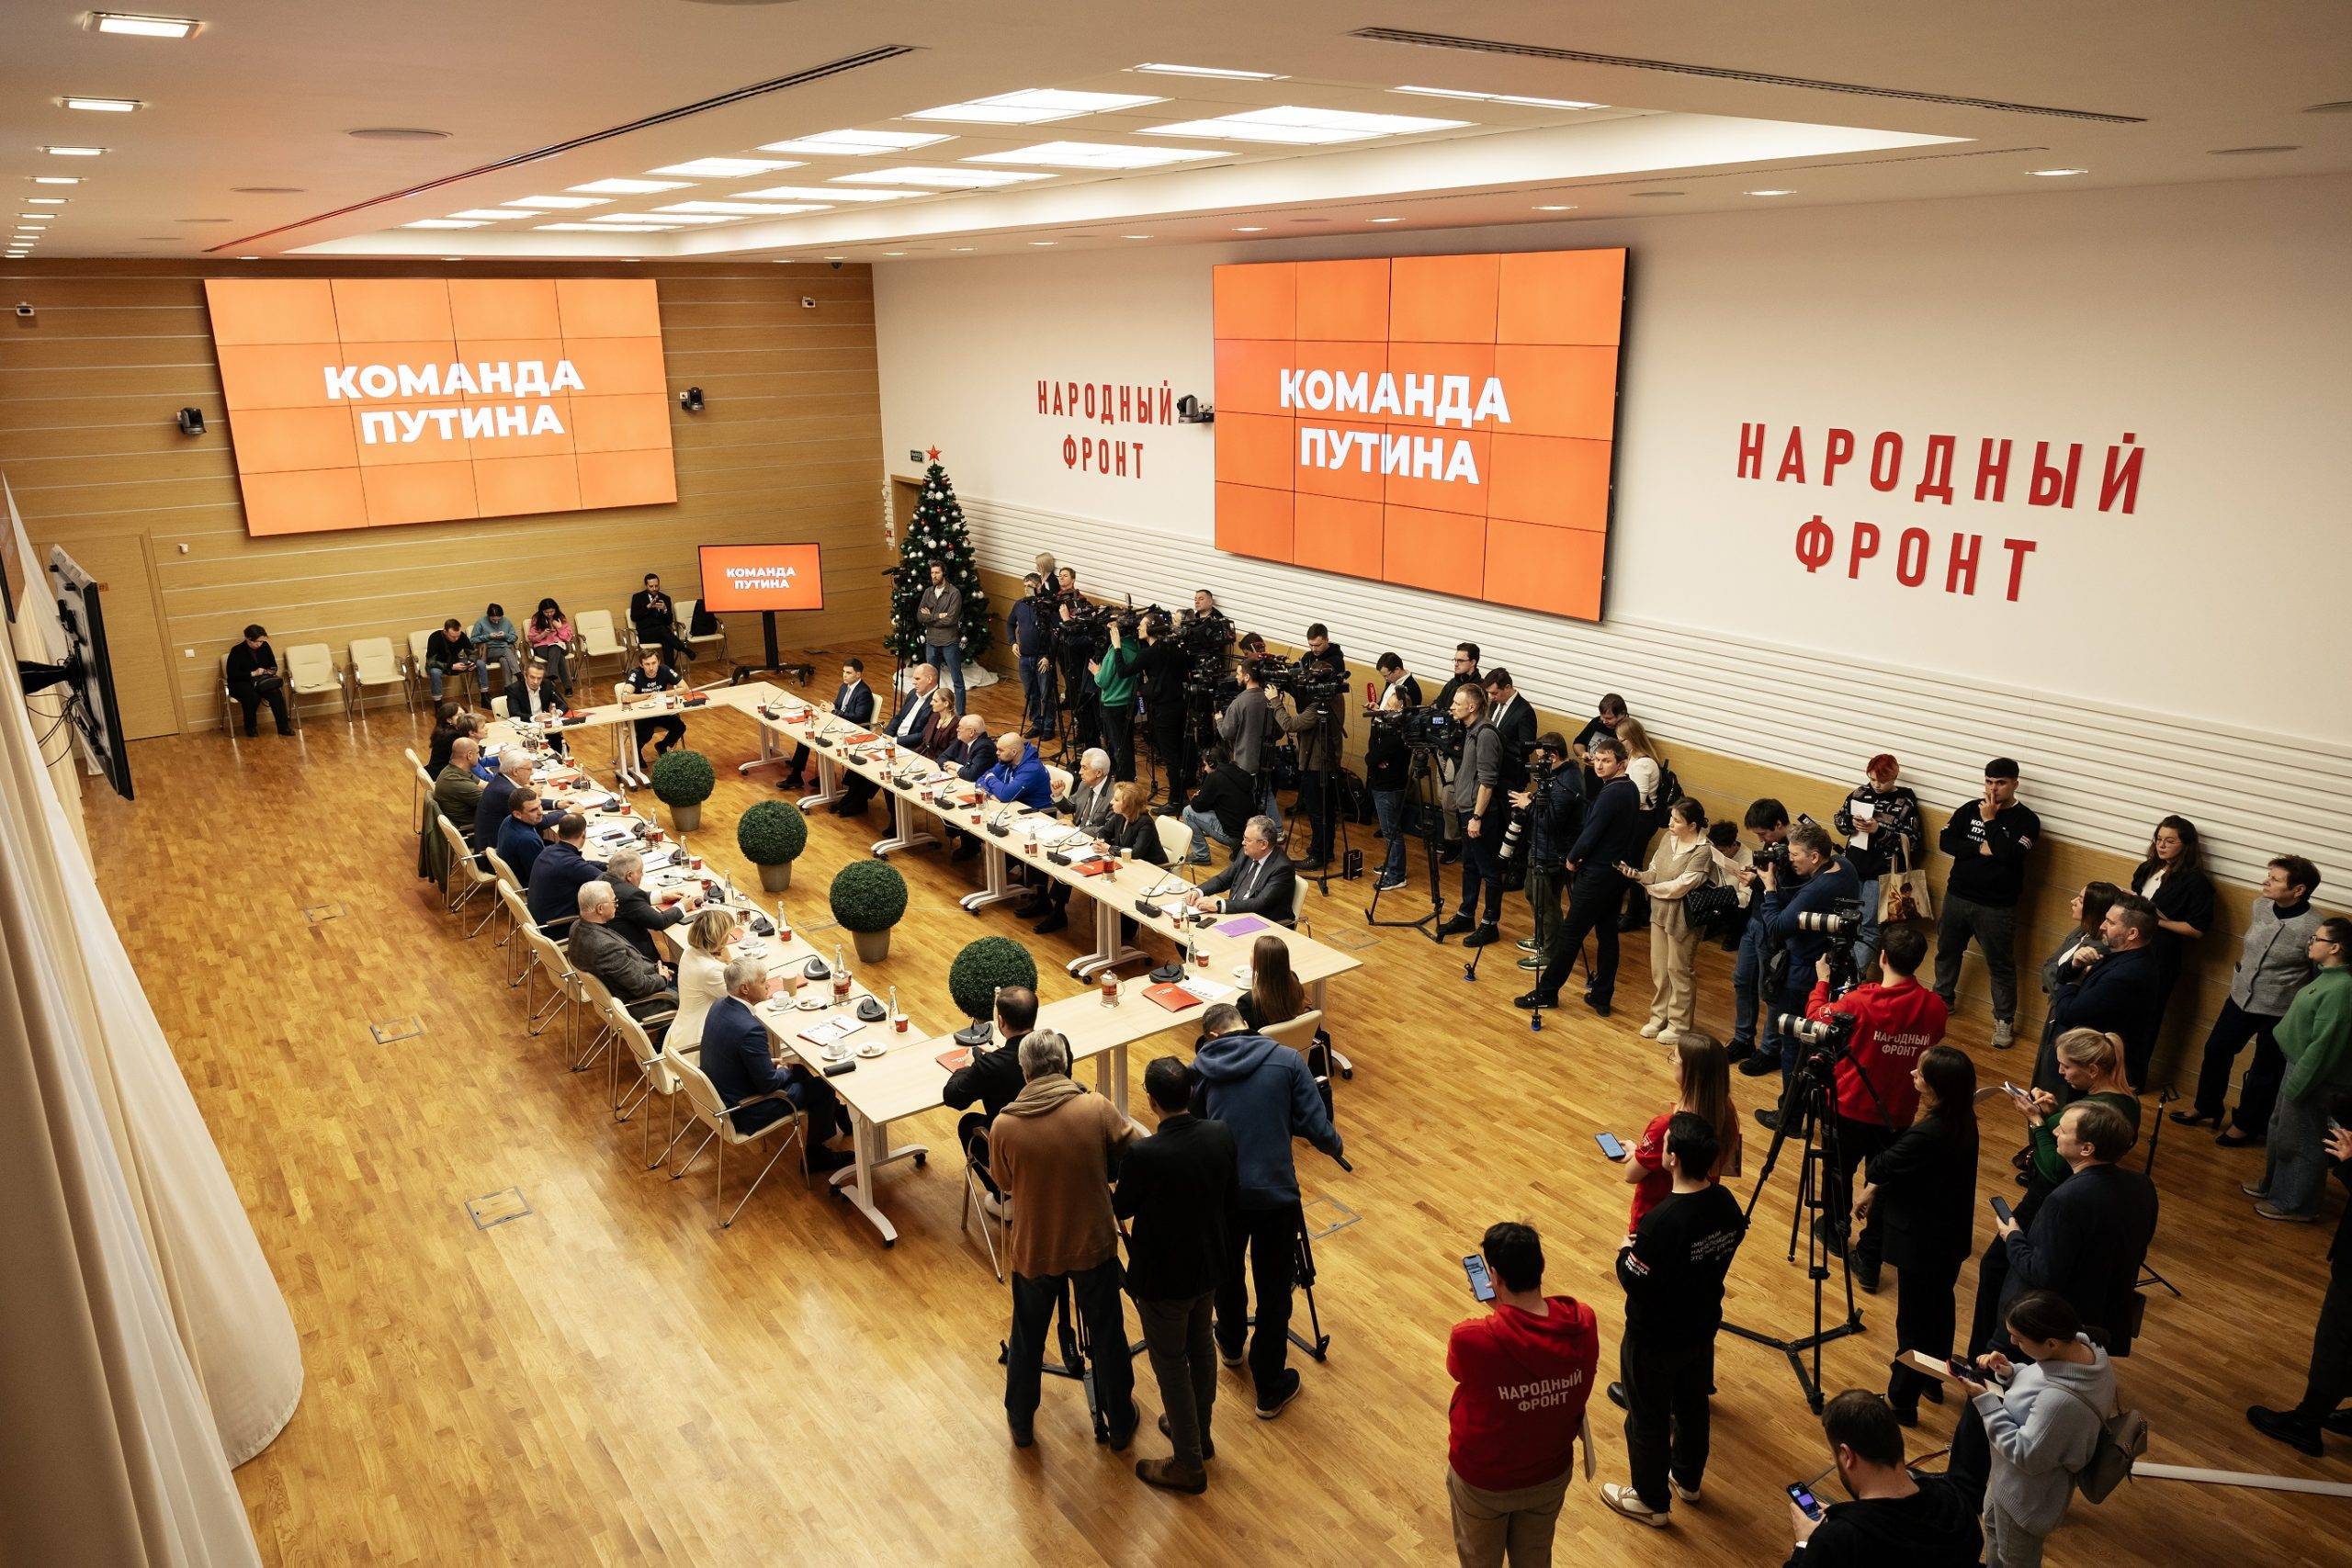 «Народный фронт» решил поддержать участие Путина в грядущих выборах 16 декабря